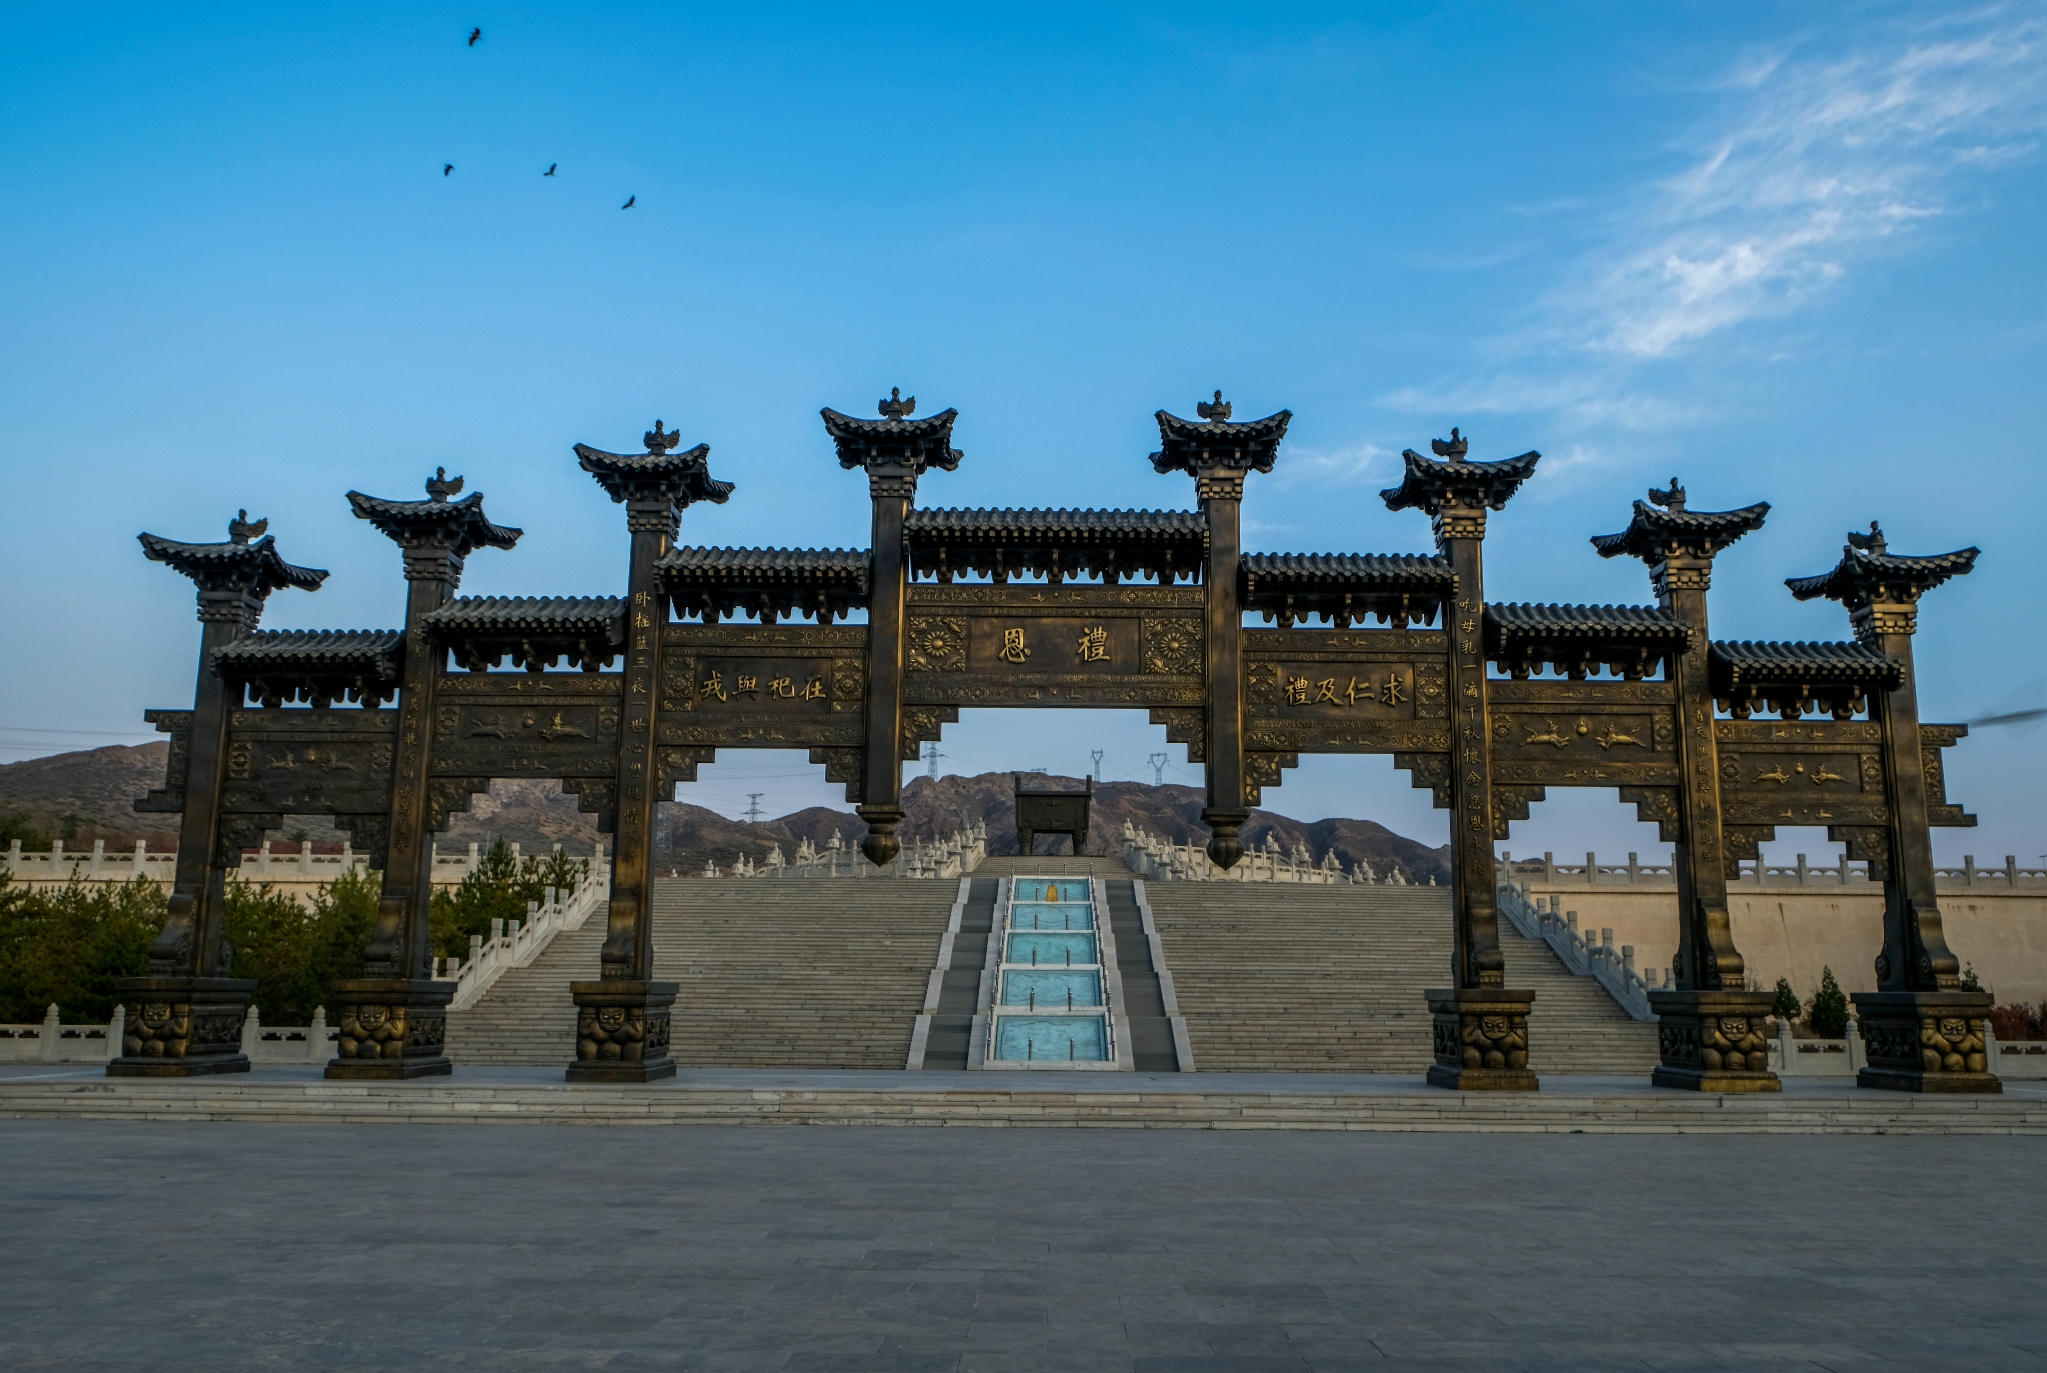 中华黄河坛,位于宁夏回族自治区吴忠青铜峡风景区,是黄河金岸的标志性